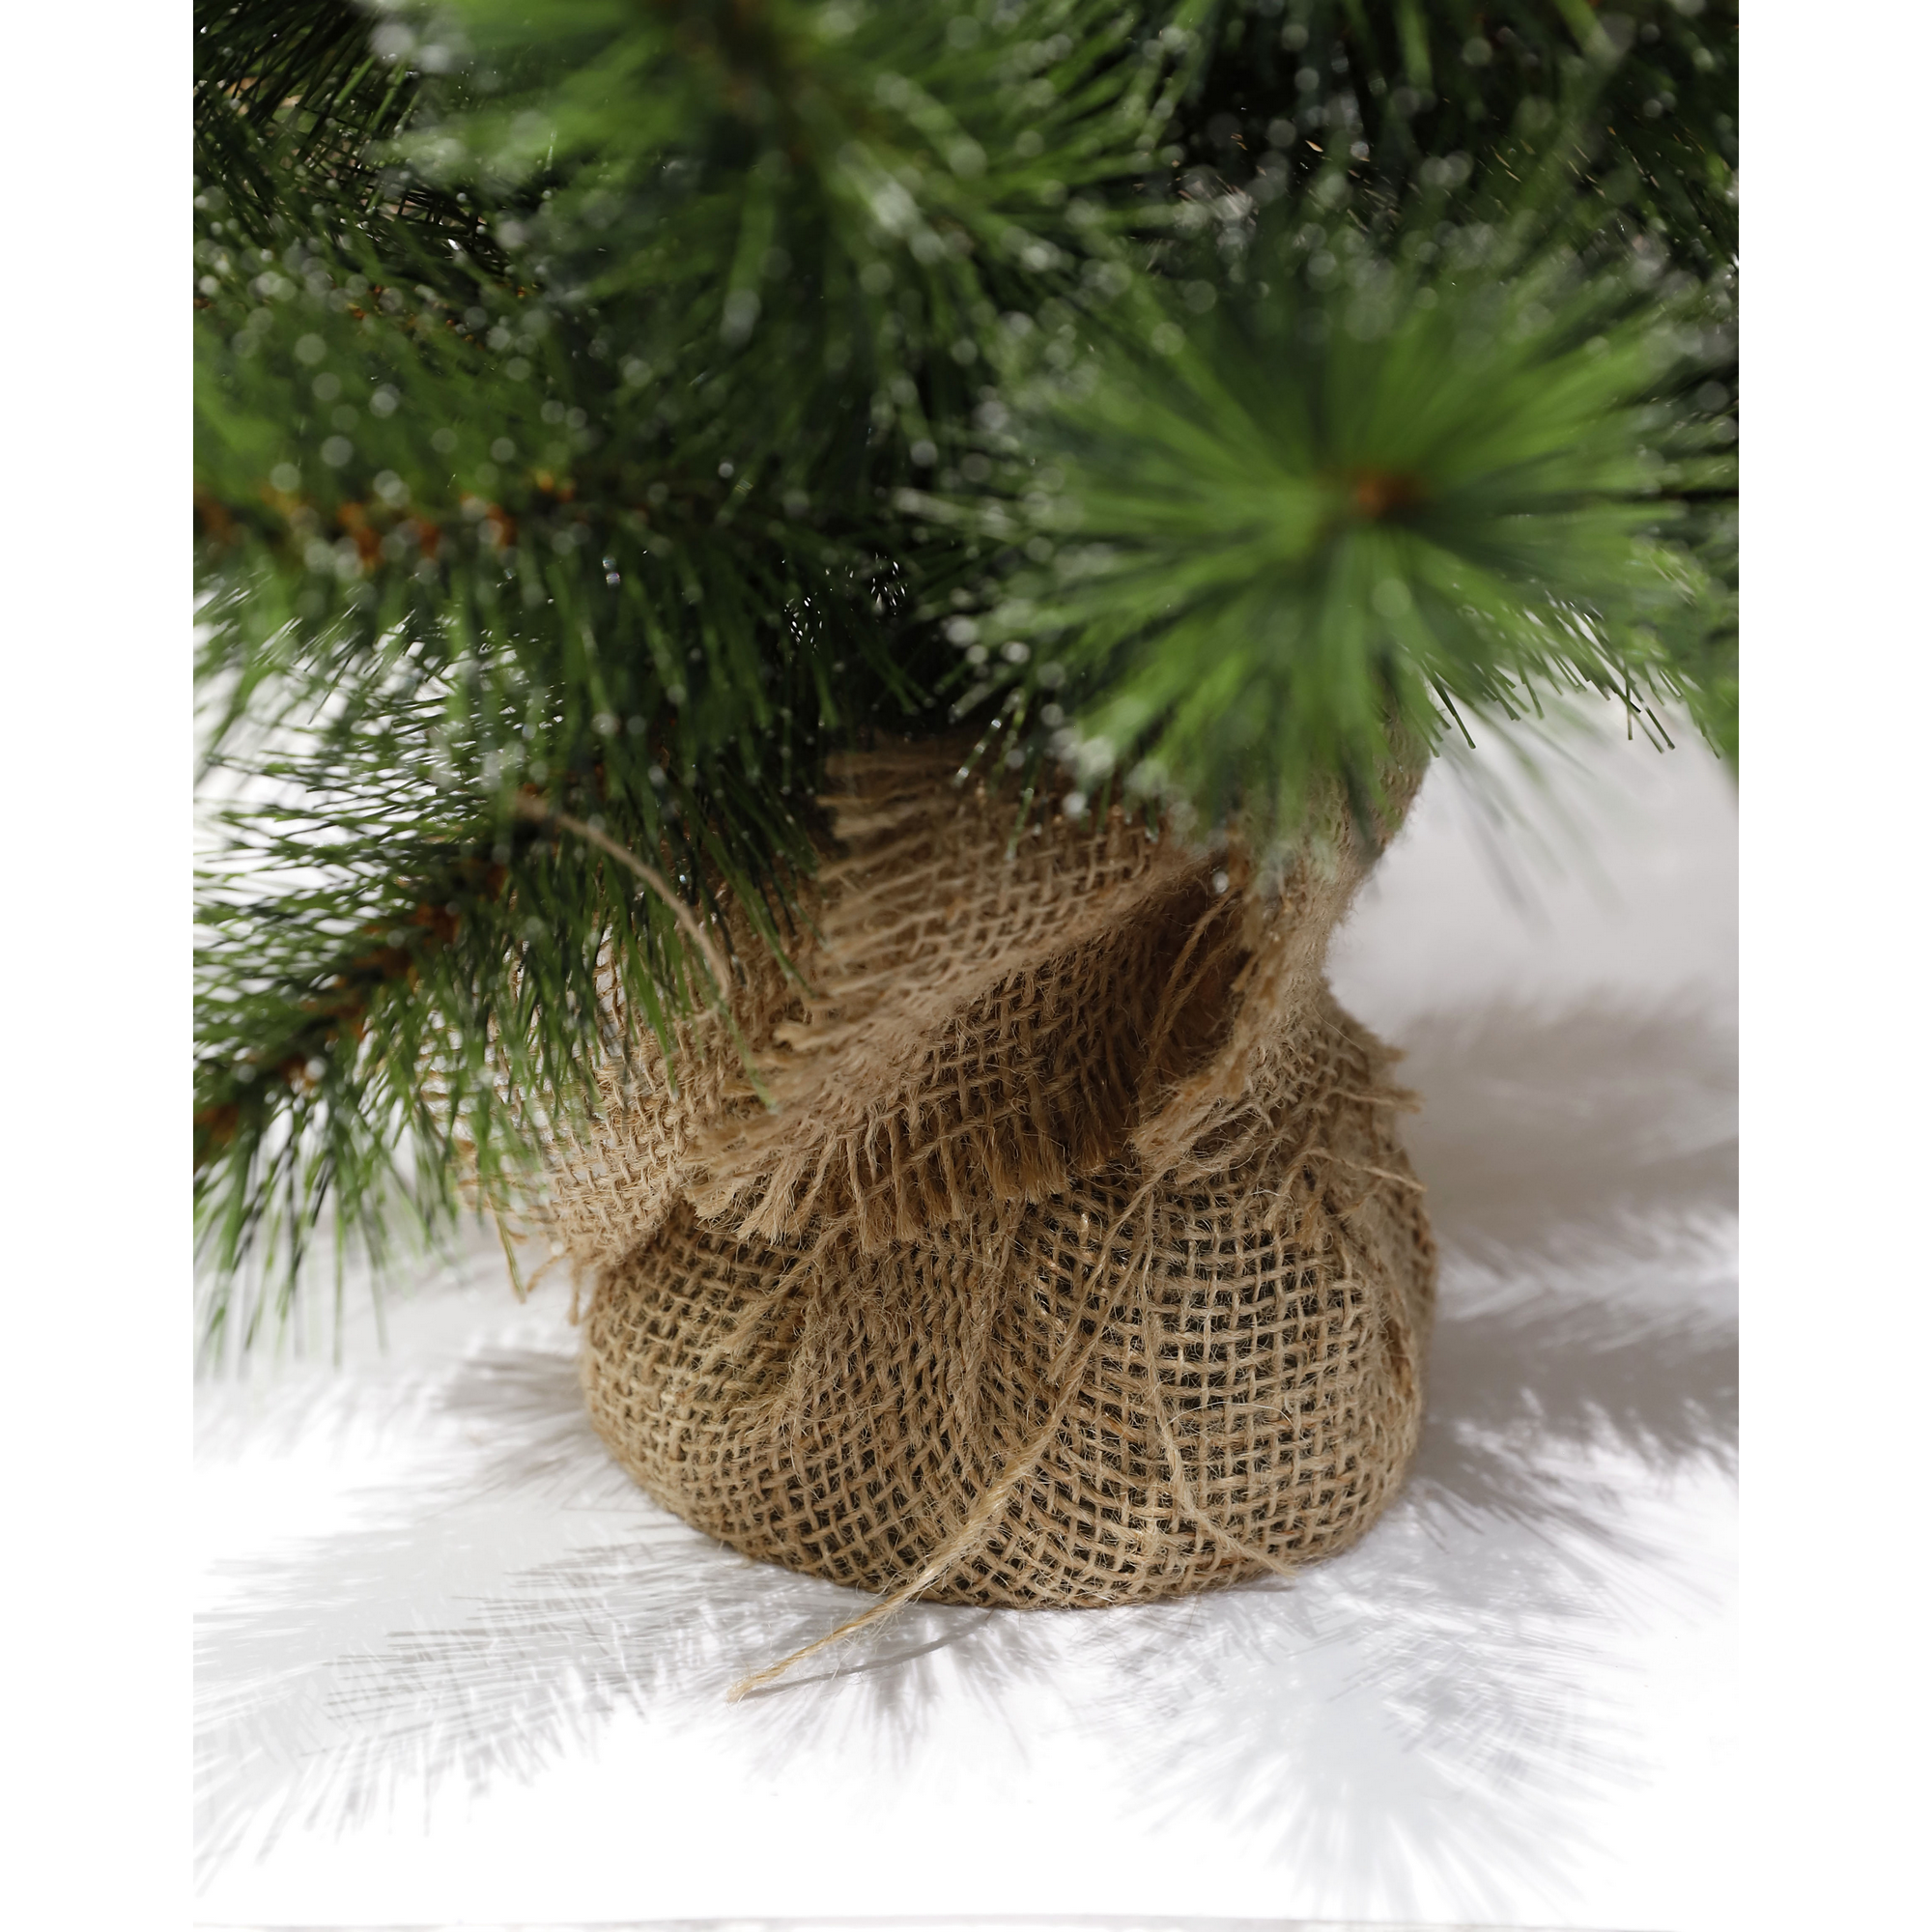 Künstlicher Weihnachtsbaum 'Jasper' grün 60 cm mit LED-Beleuchtung + product picture